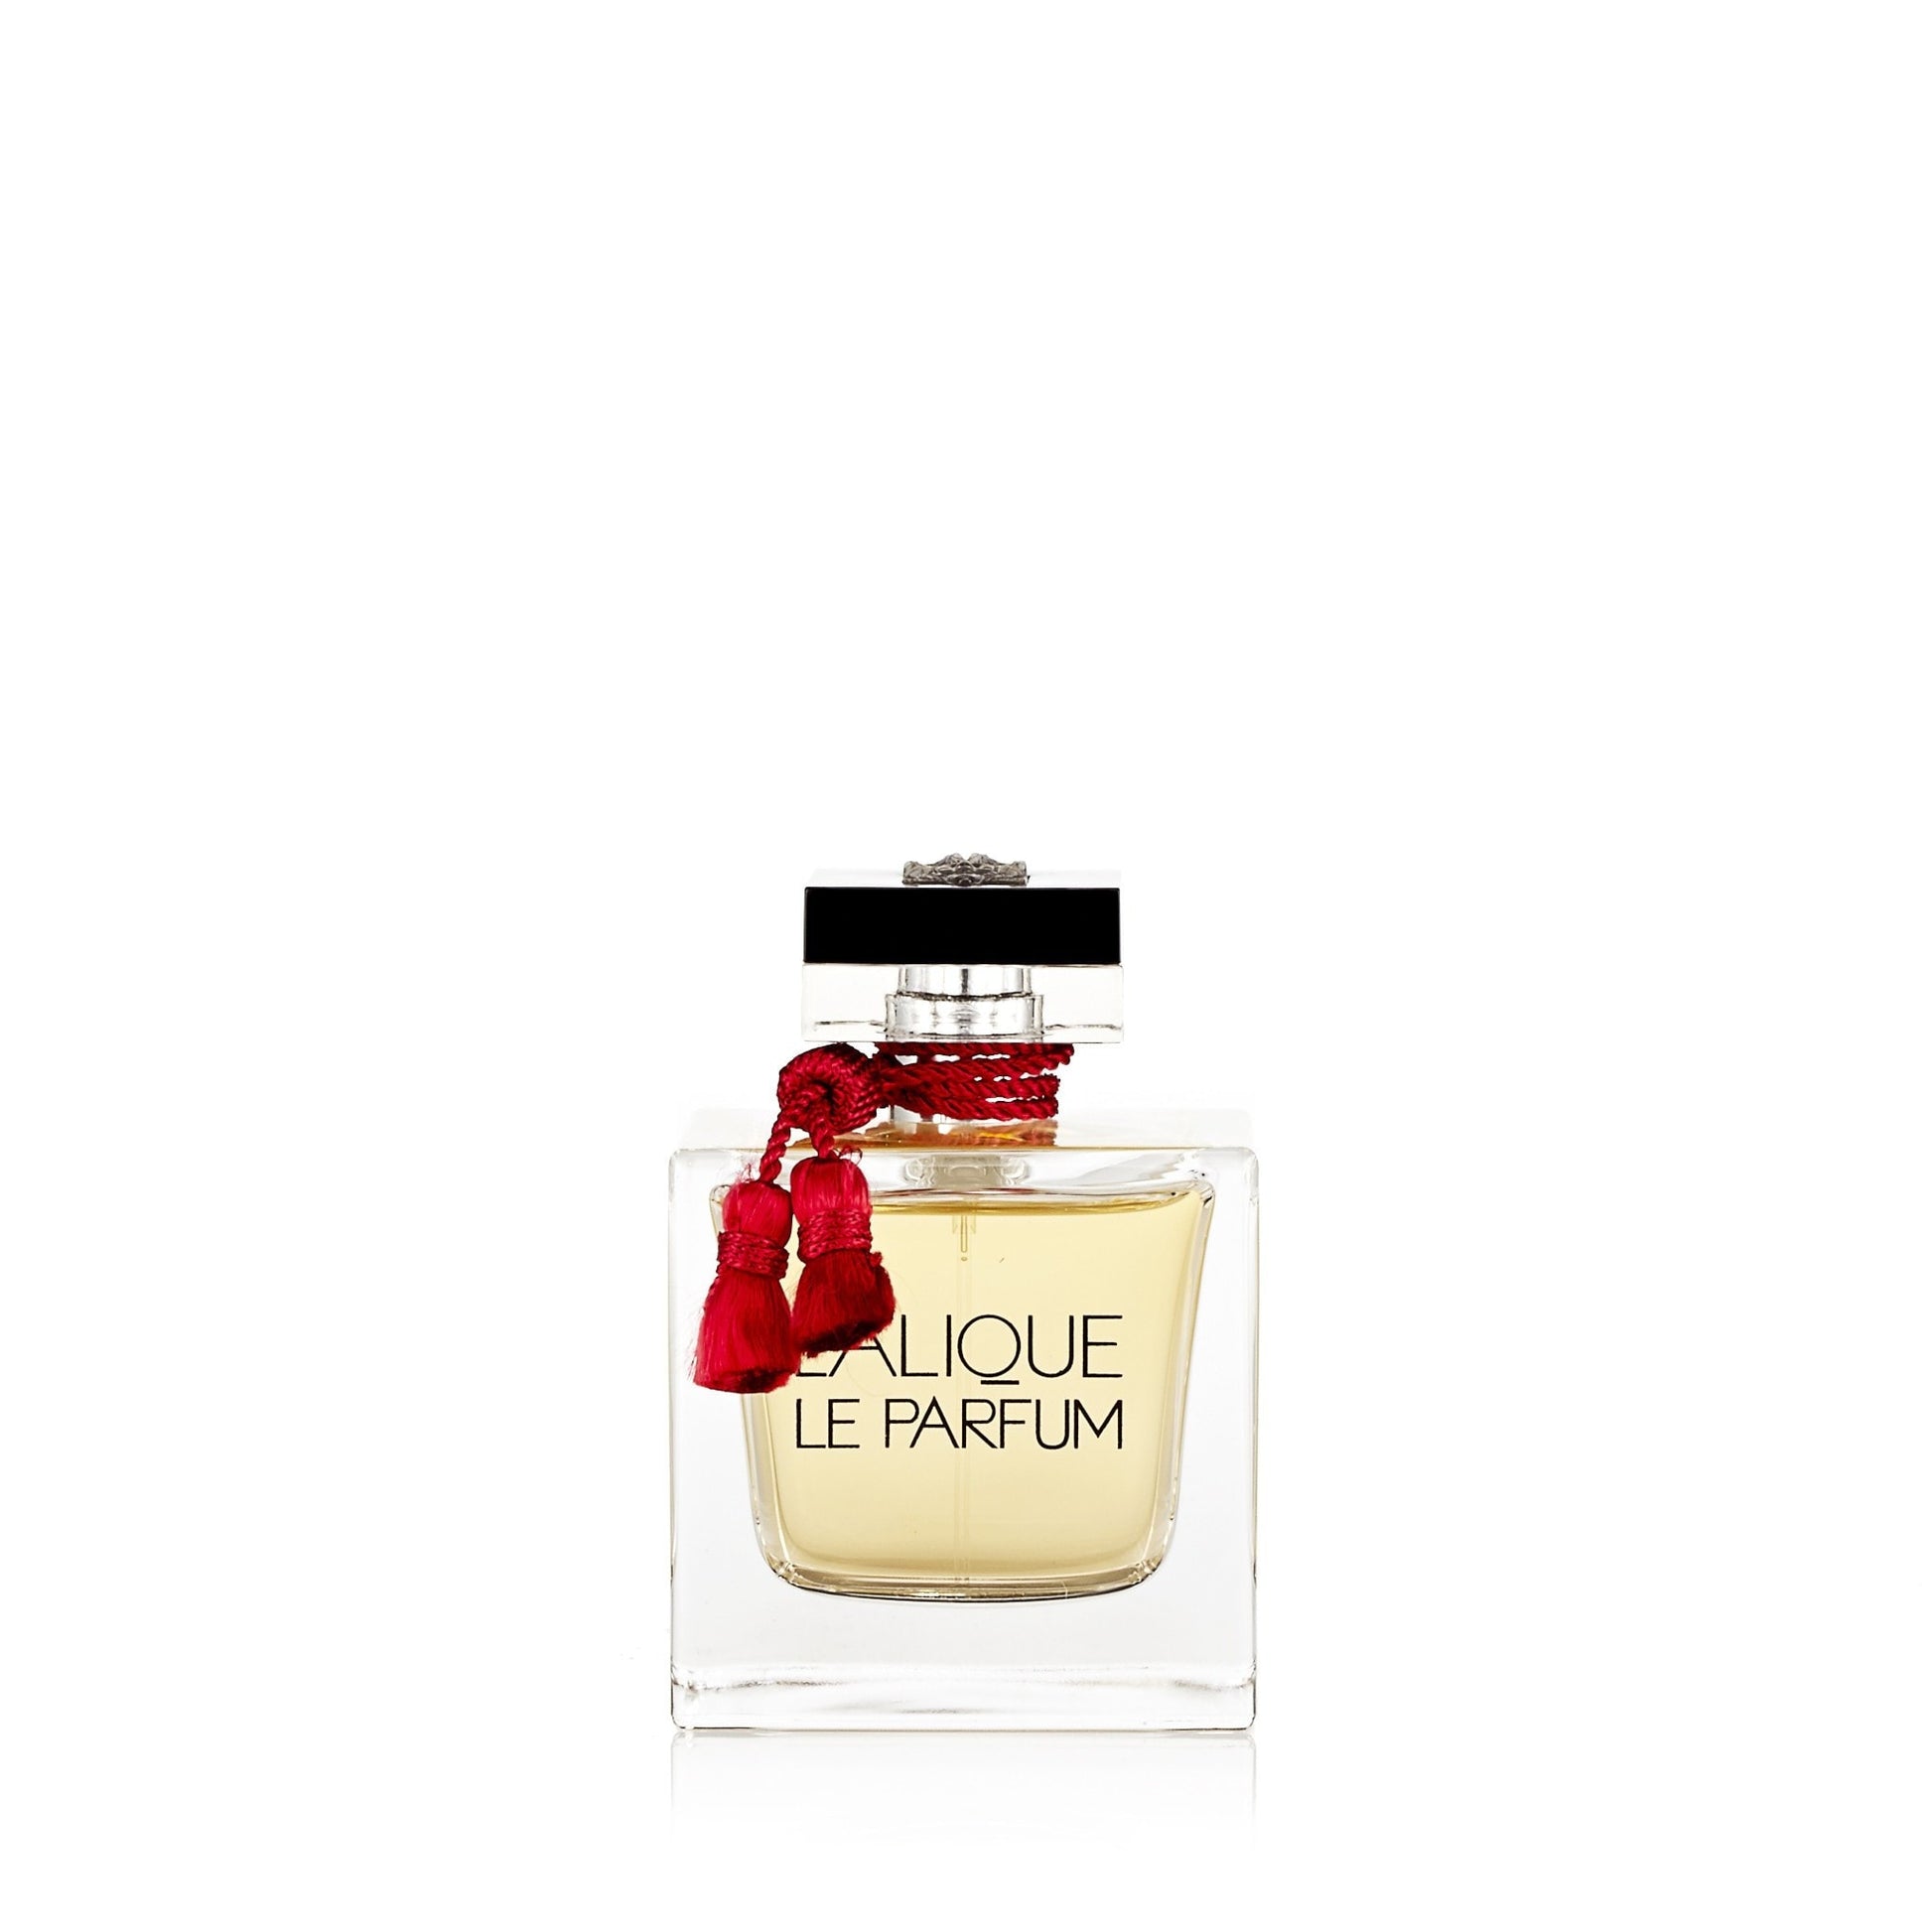 La Parfum Eau de Parfum Spray for Women by Lalique 3.3 oz. Click to open in modal